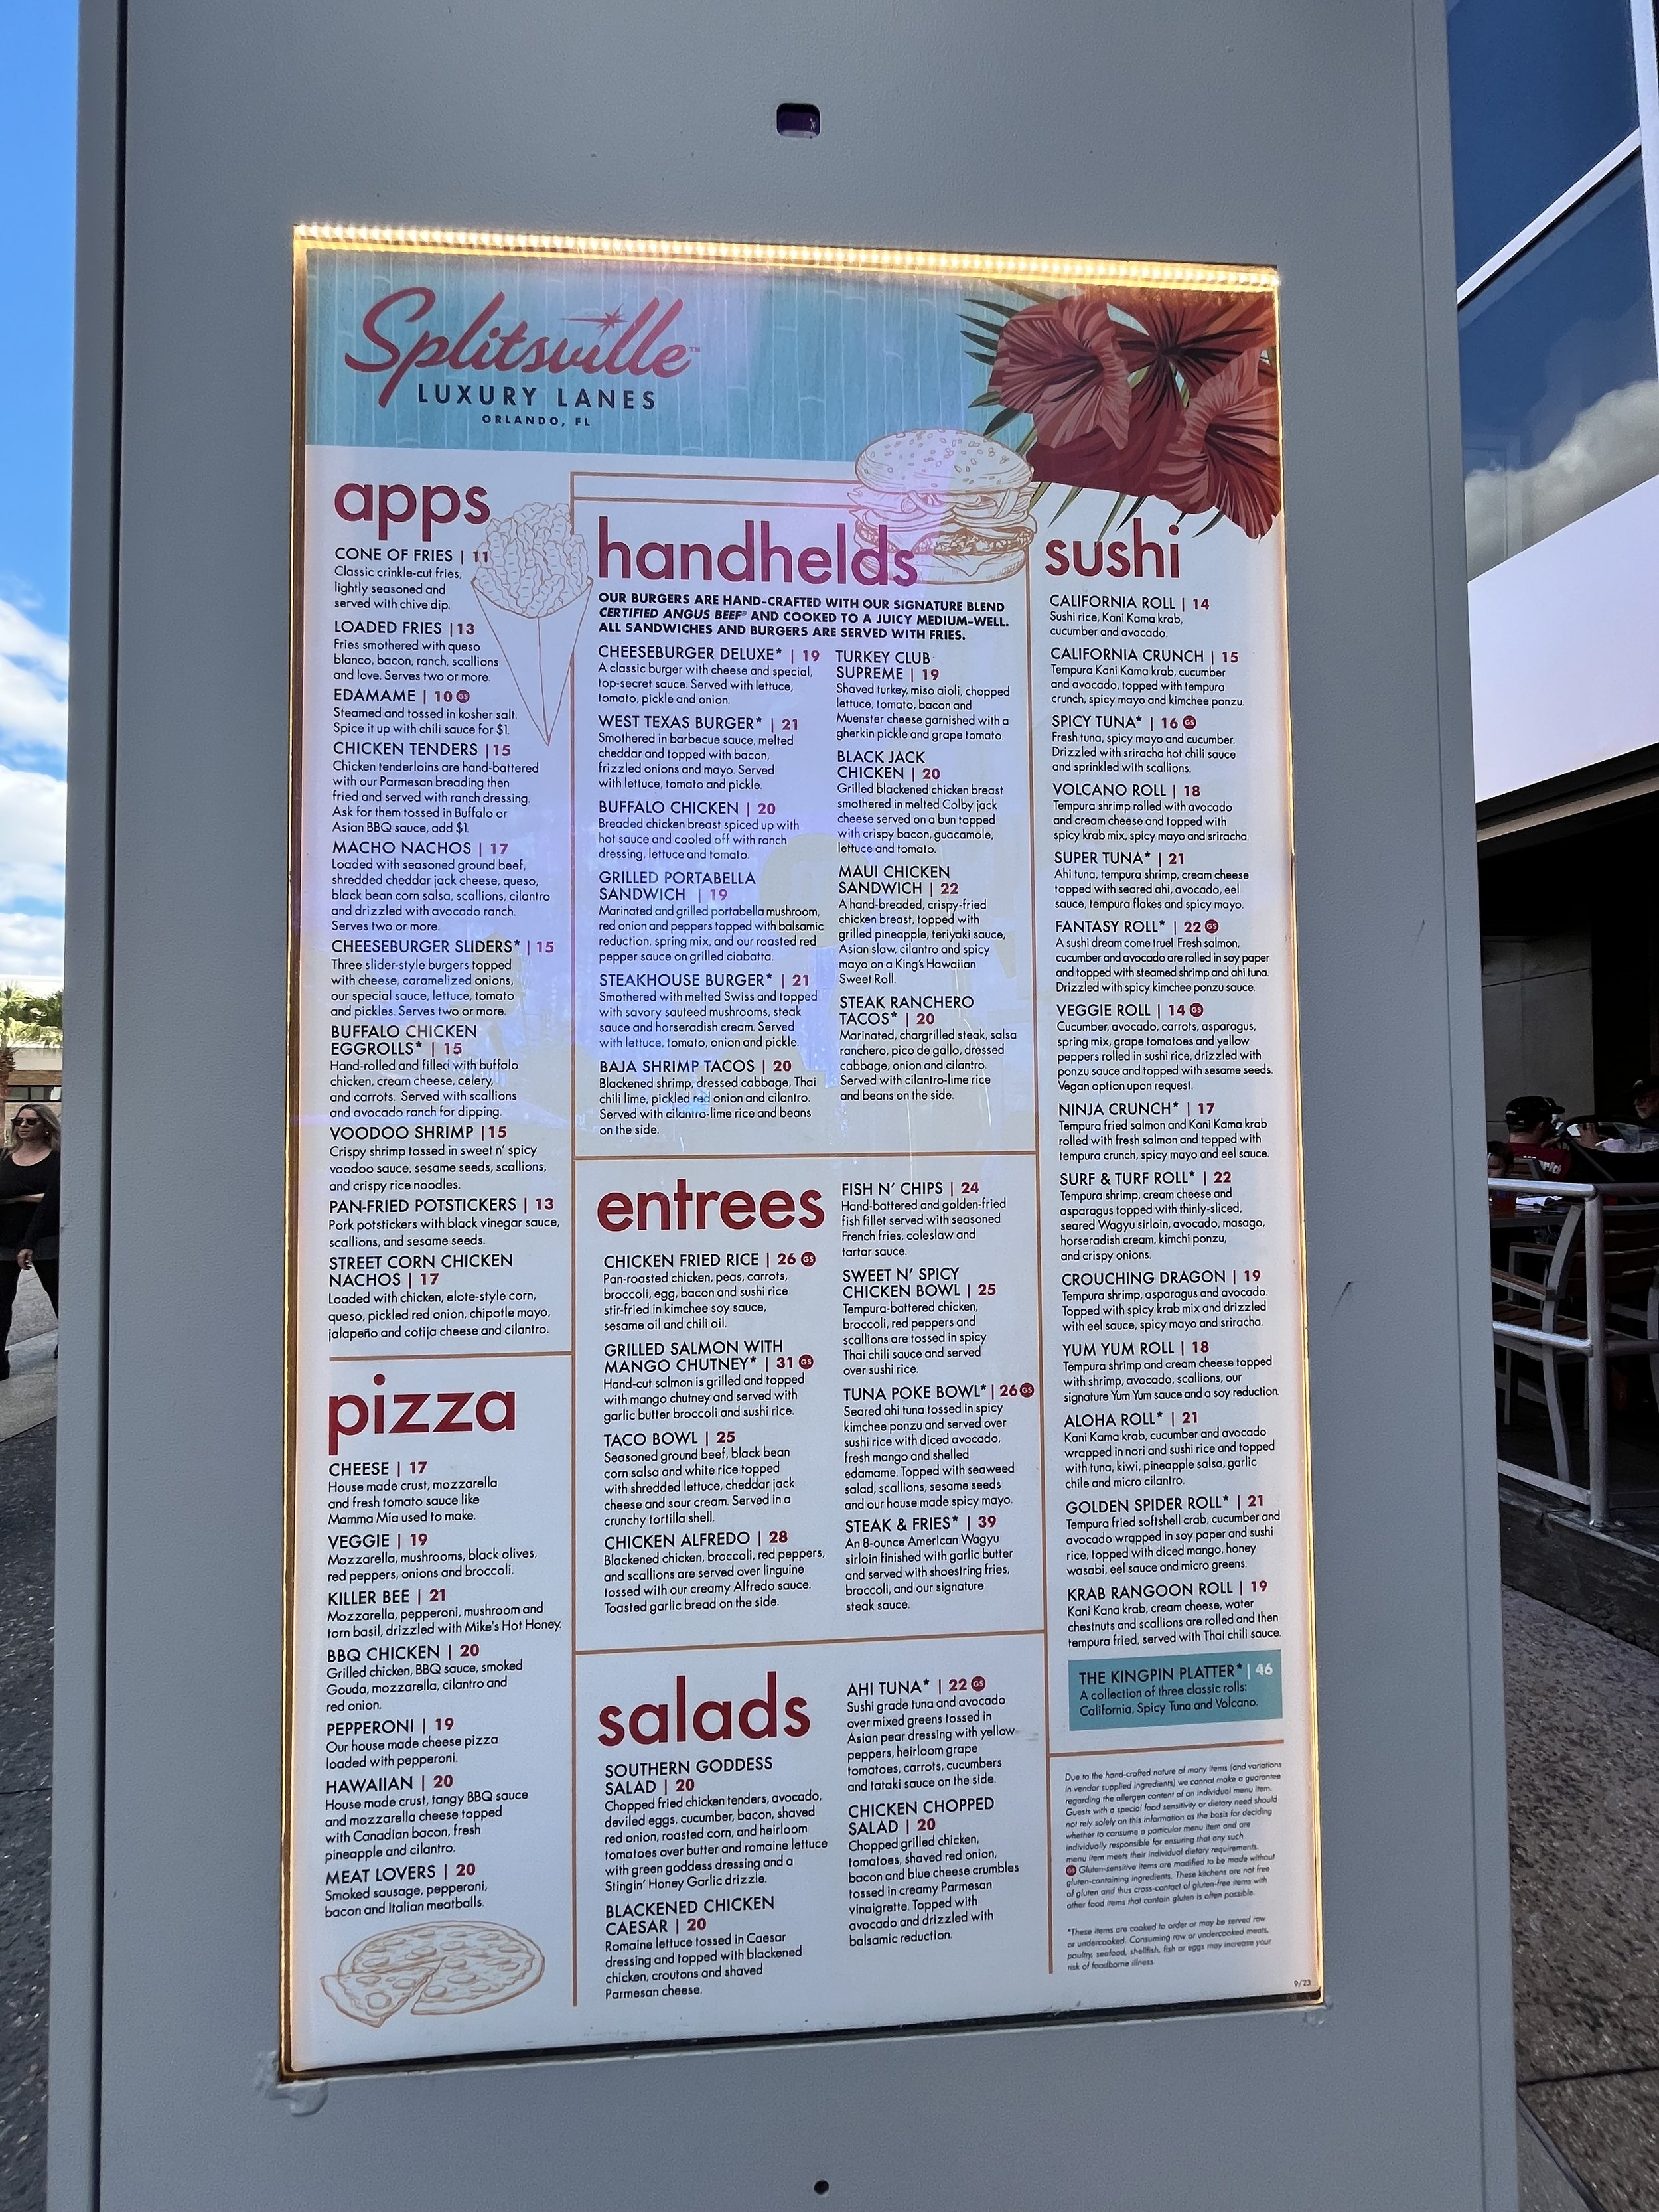 Splitsville menu Disney Springs Florida.jpg